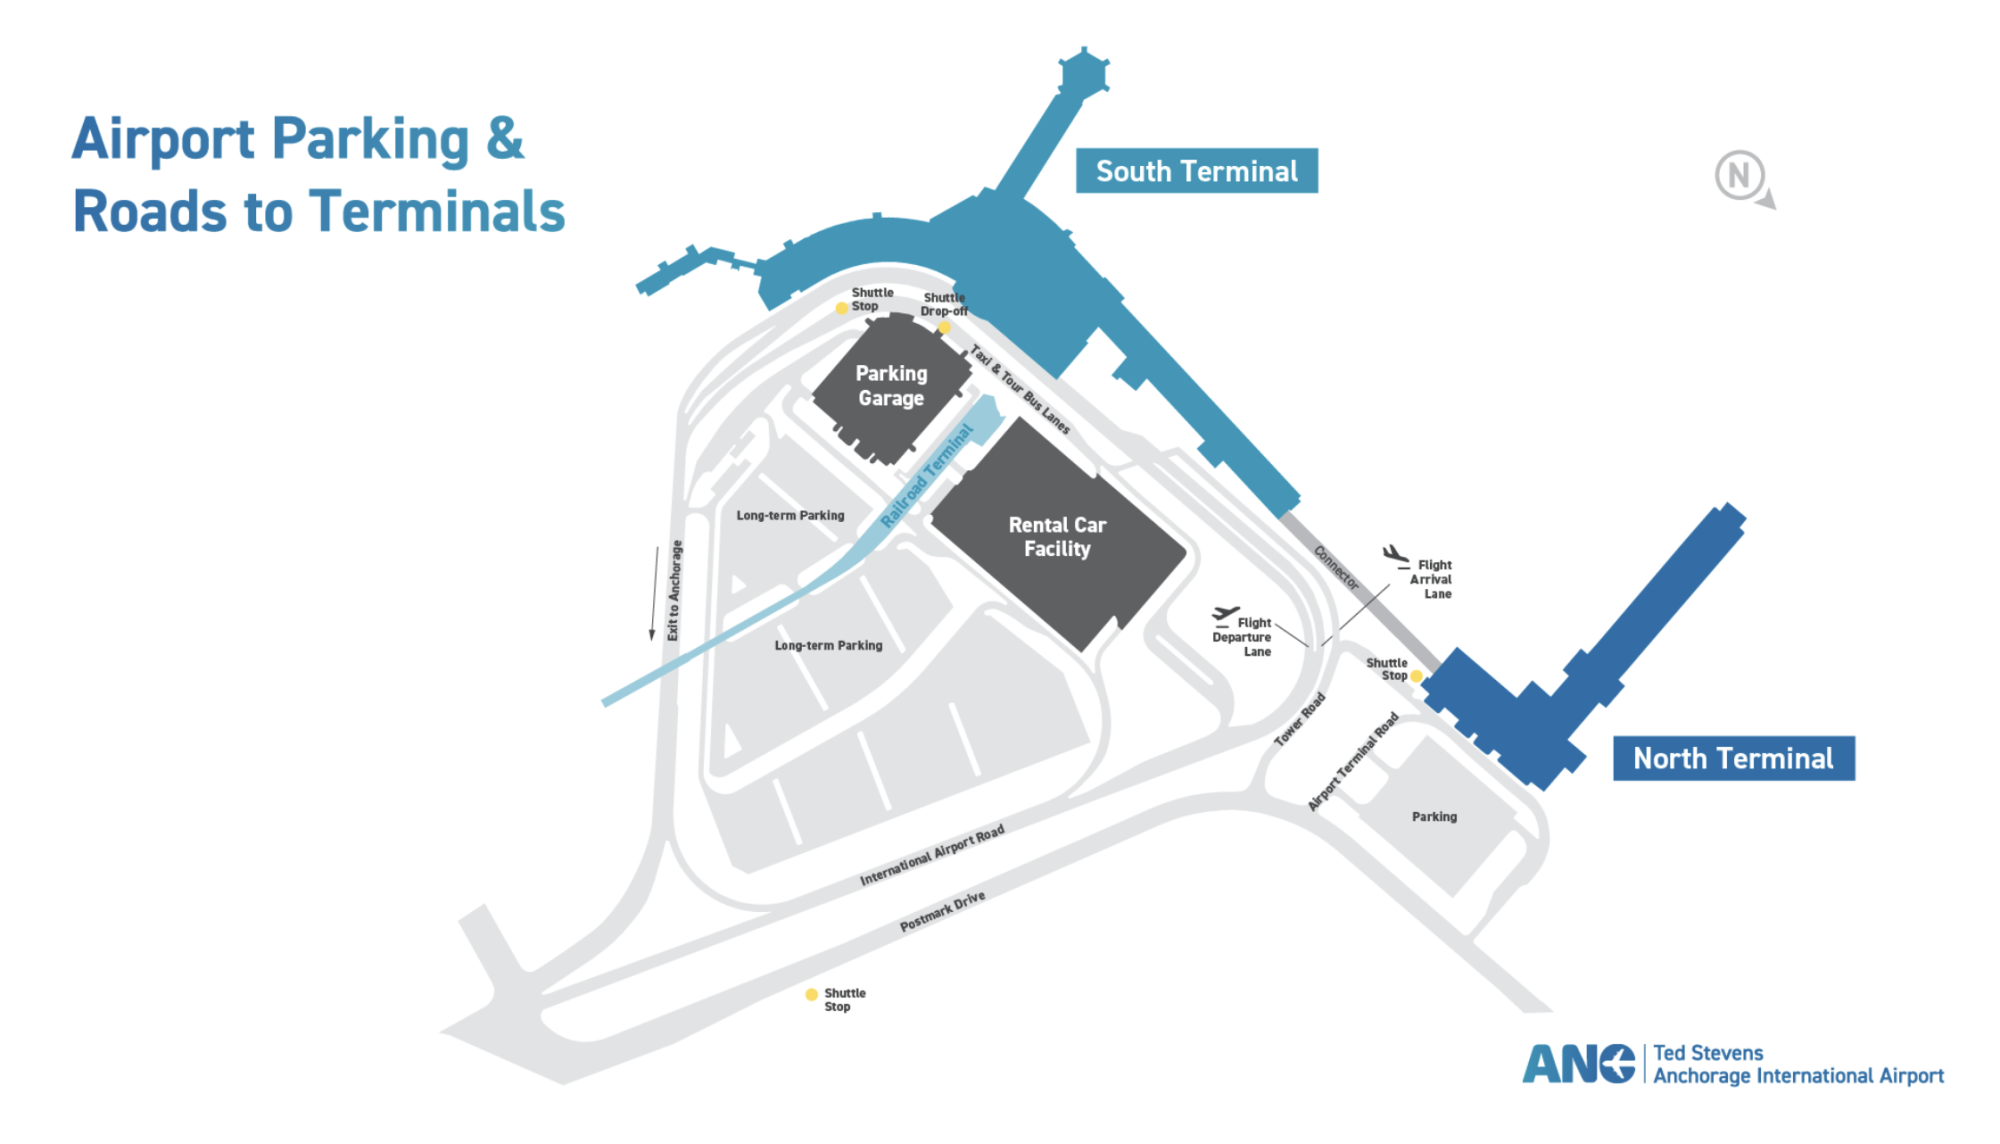 Аэропорт мале вылет. Аэропорт имени Теда Стивенса в Анкоридже. Аэропорт Мале схема. План аэропорта Мале. Схема аэропорта Мале Мальдивы.